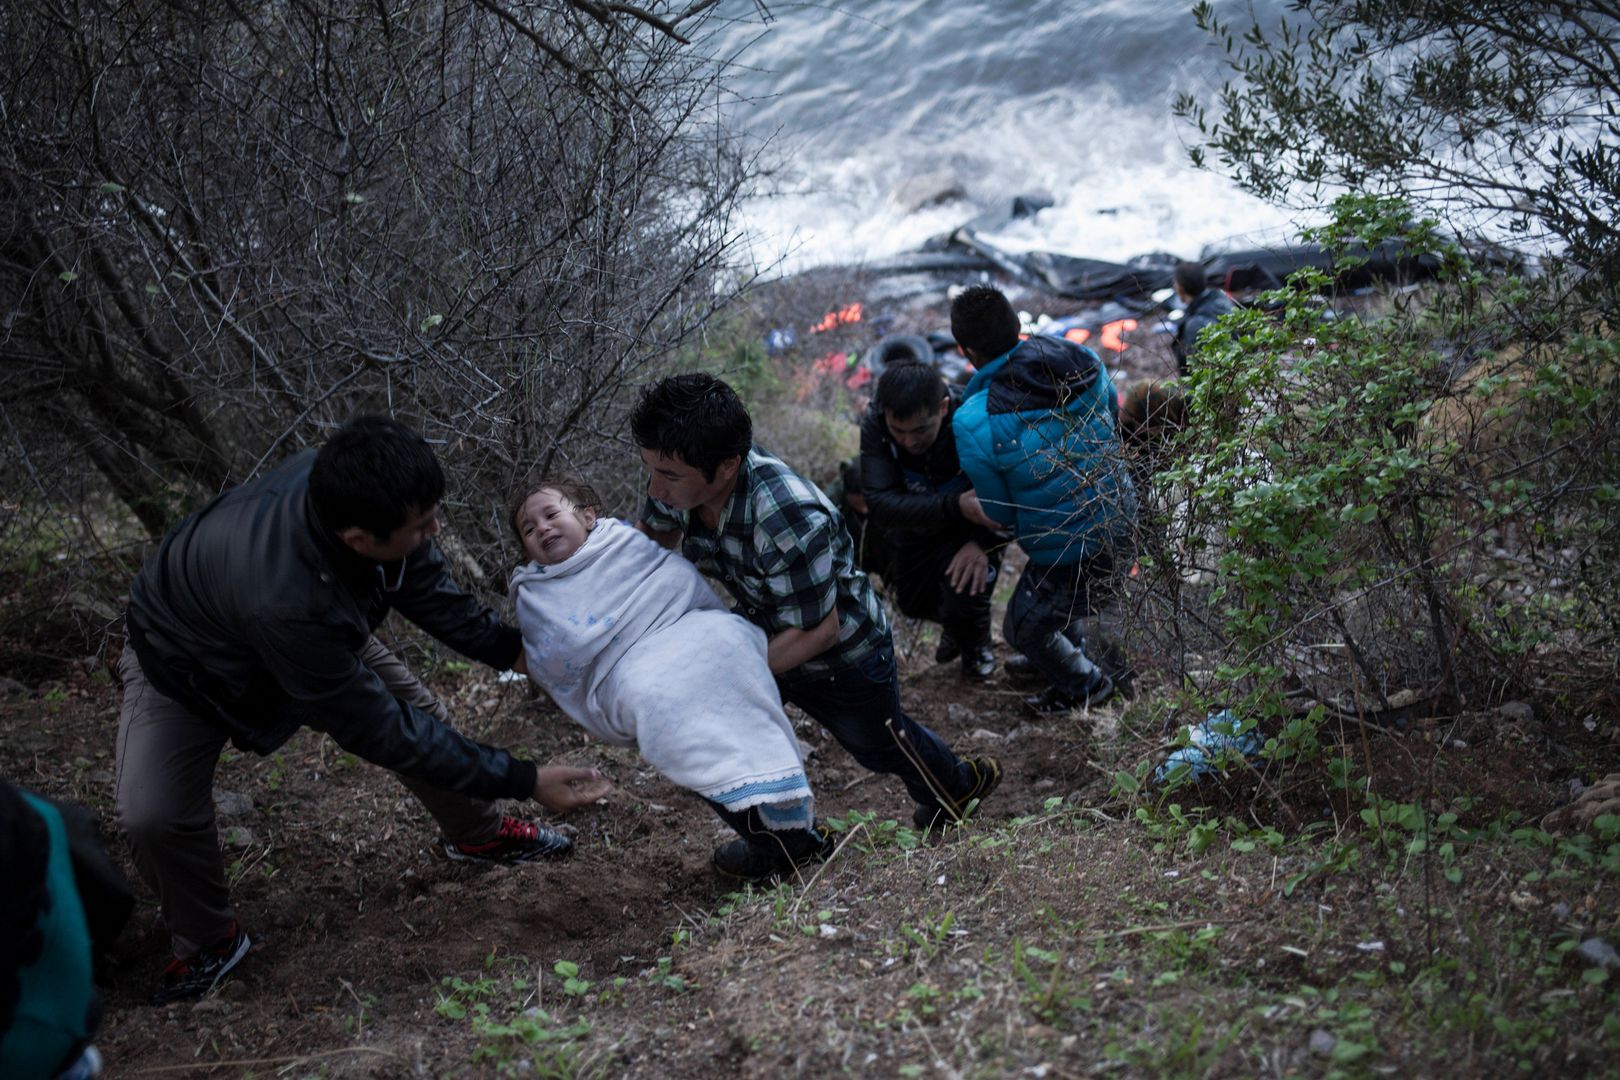 W szczycie kryzysu migracyjnego przez szlak prowadzący z Turcji do Grecji przeszły setki tysięcy uchodźców